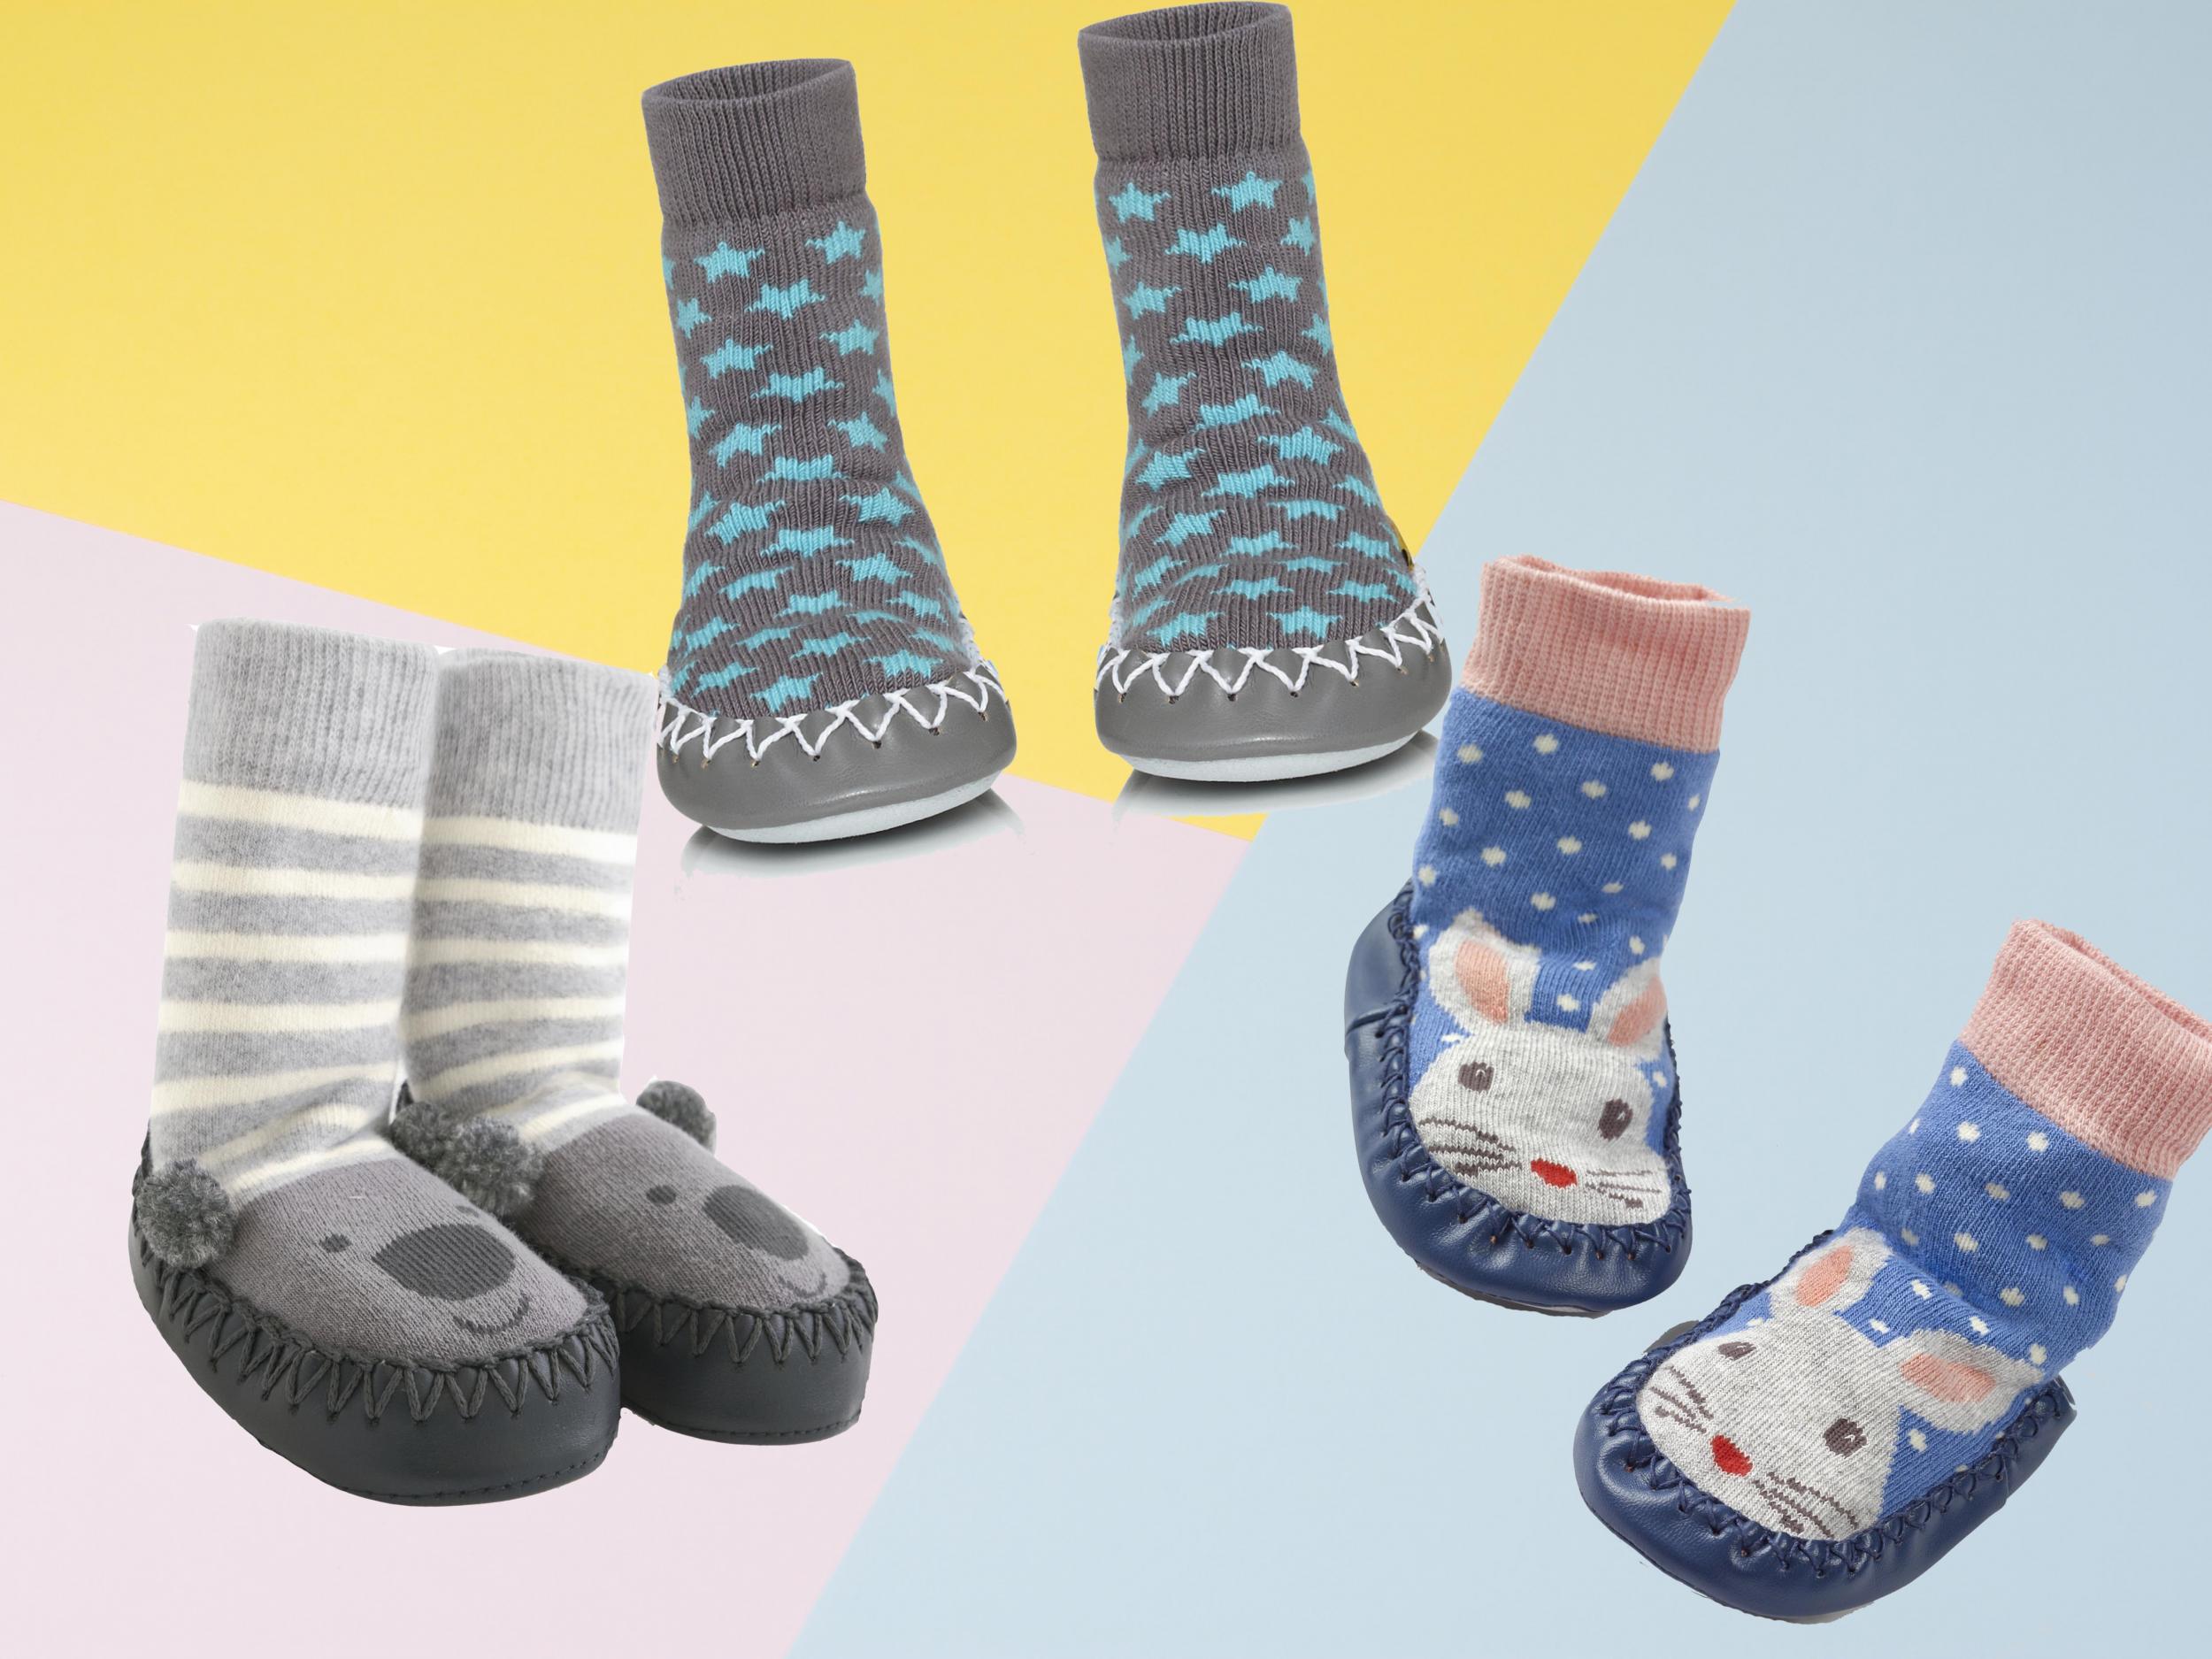 Toddler Baby Socks Shoes Anti-Slip Walking Socks Thin Socks Children Baby Girl Boys Floor Socks